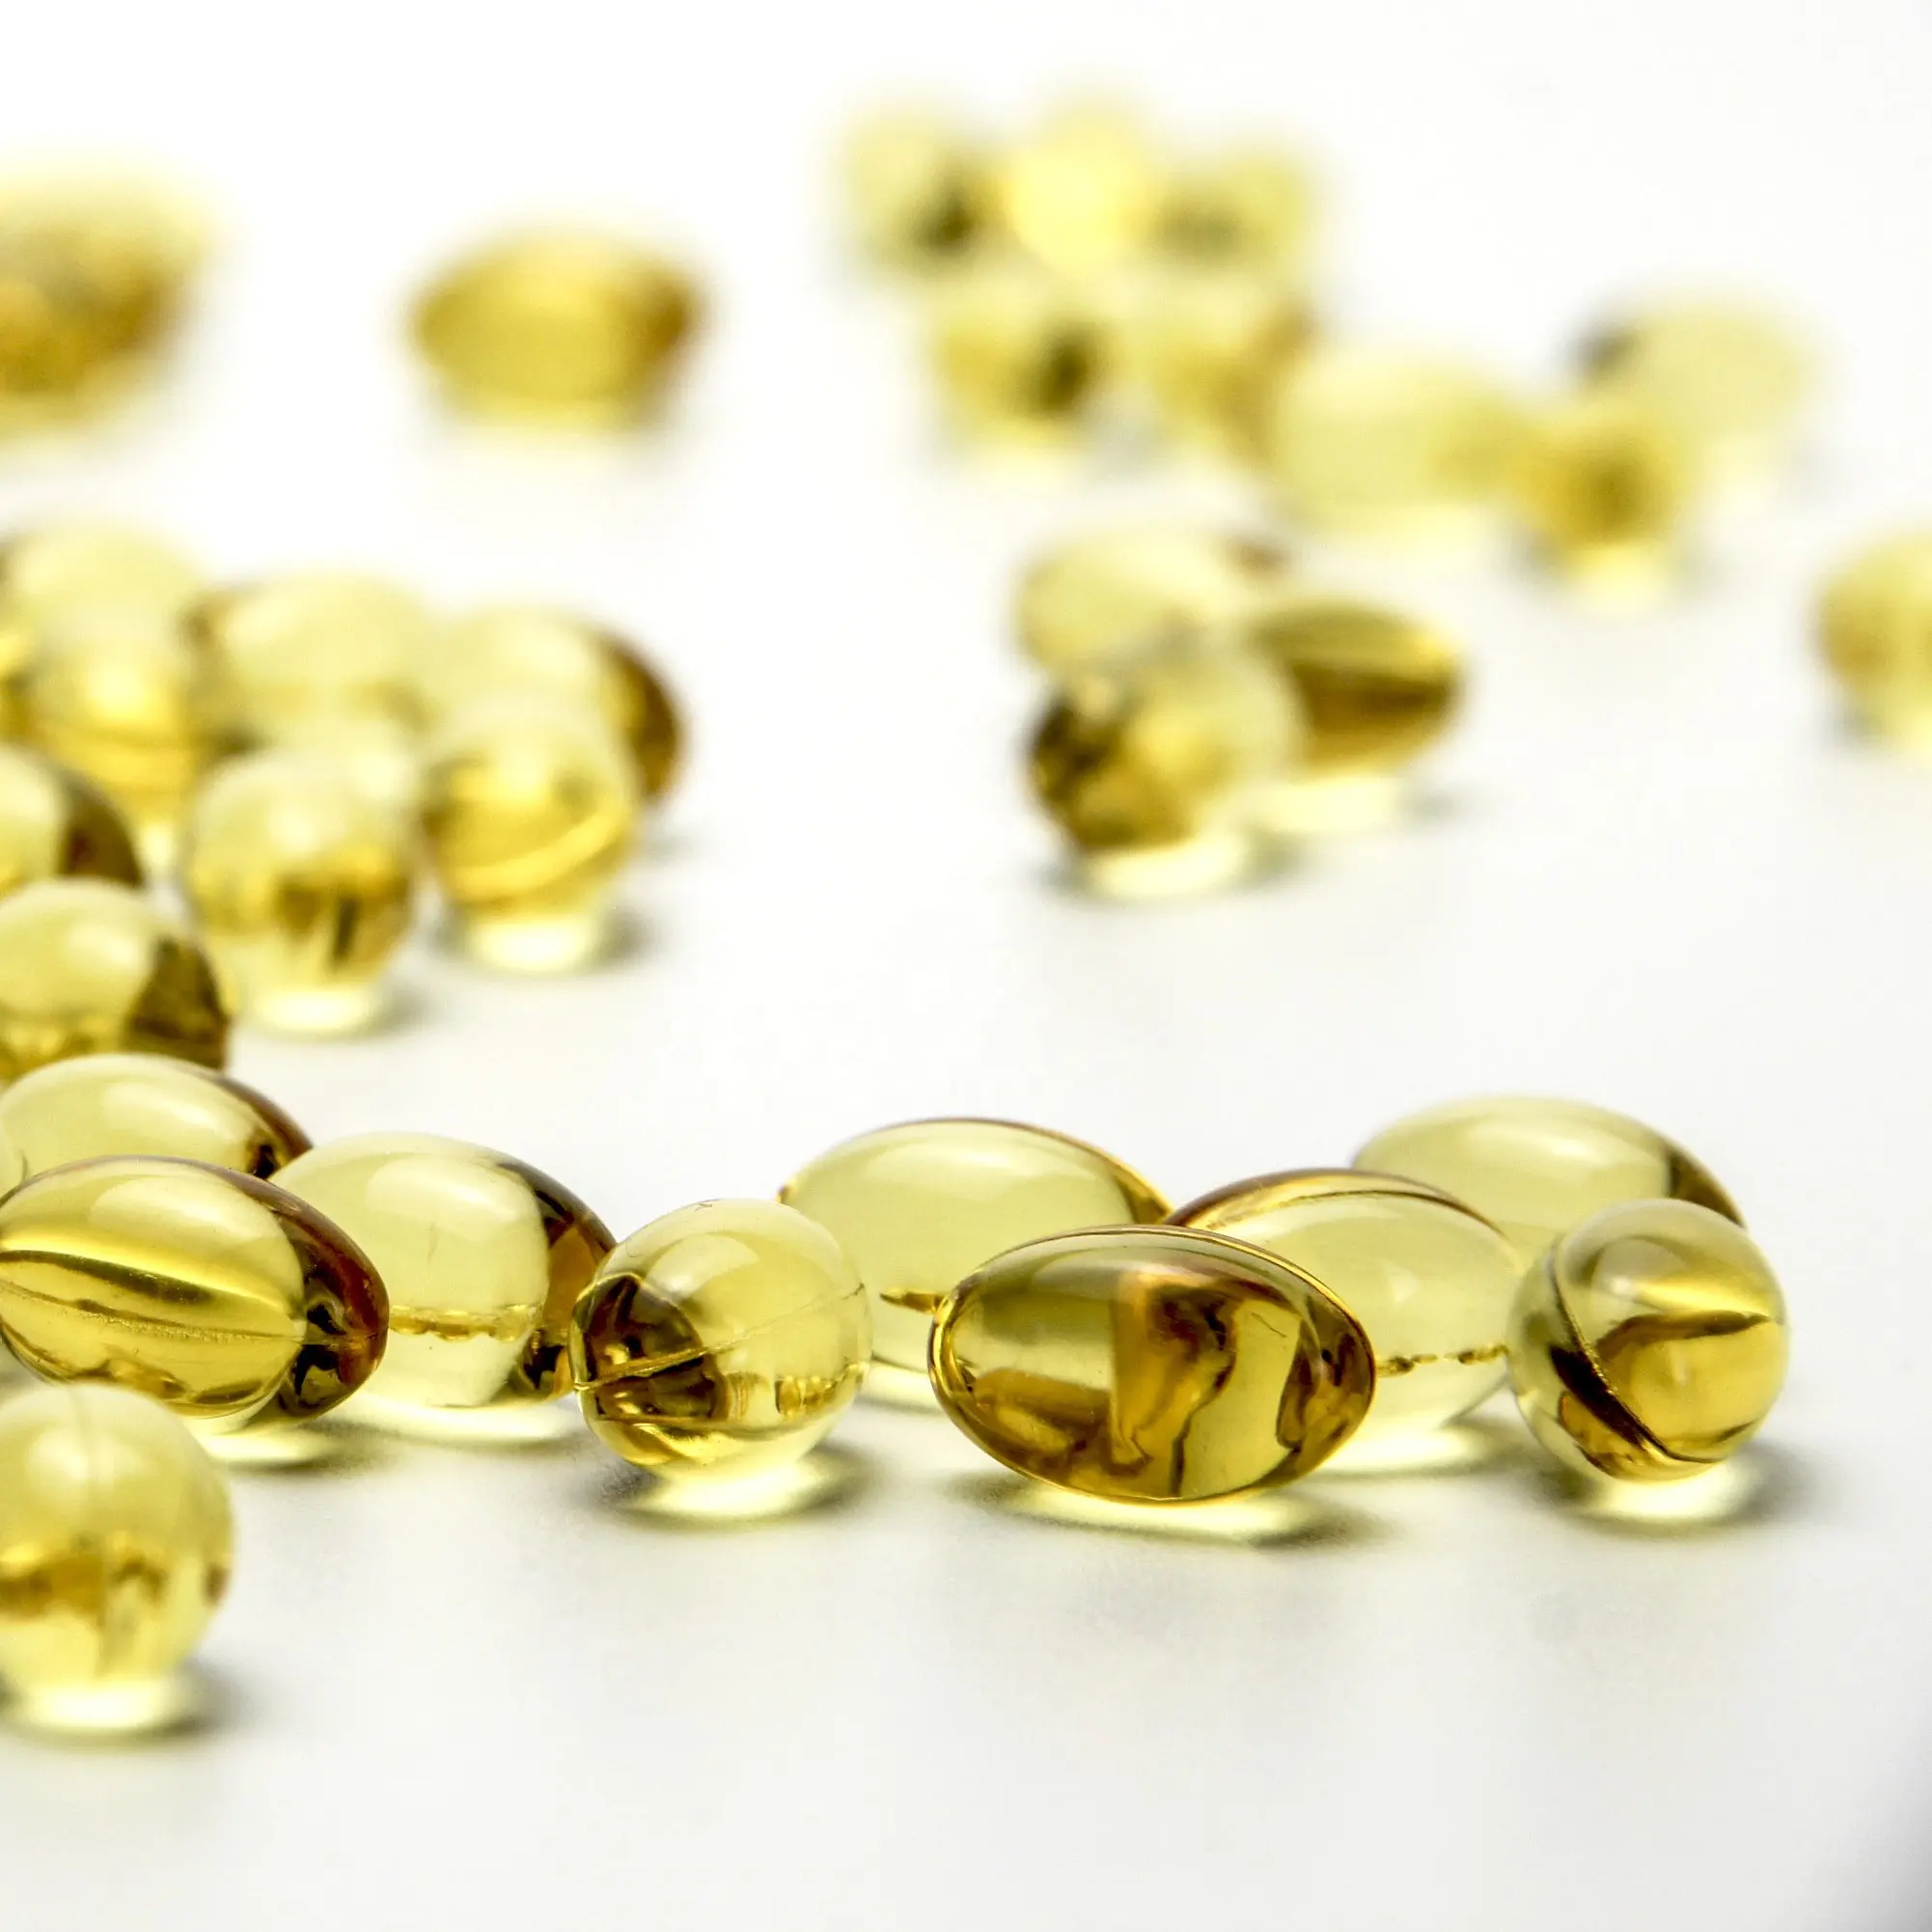 China fornecedor melhor venda vitamina a vitamina d3 vitmin e cod liver óleo softgel cápsula em massa